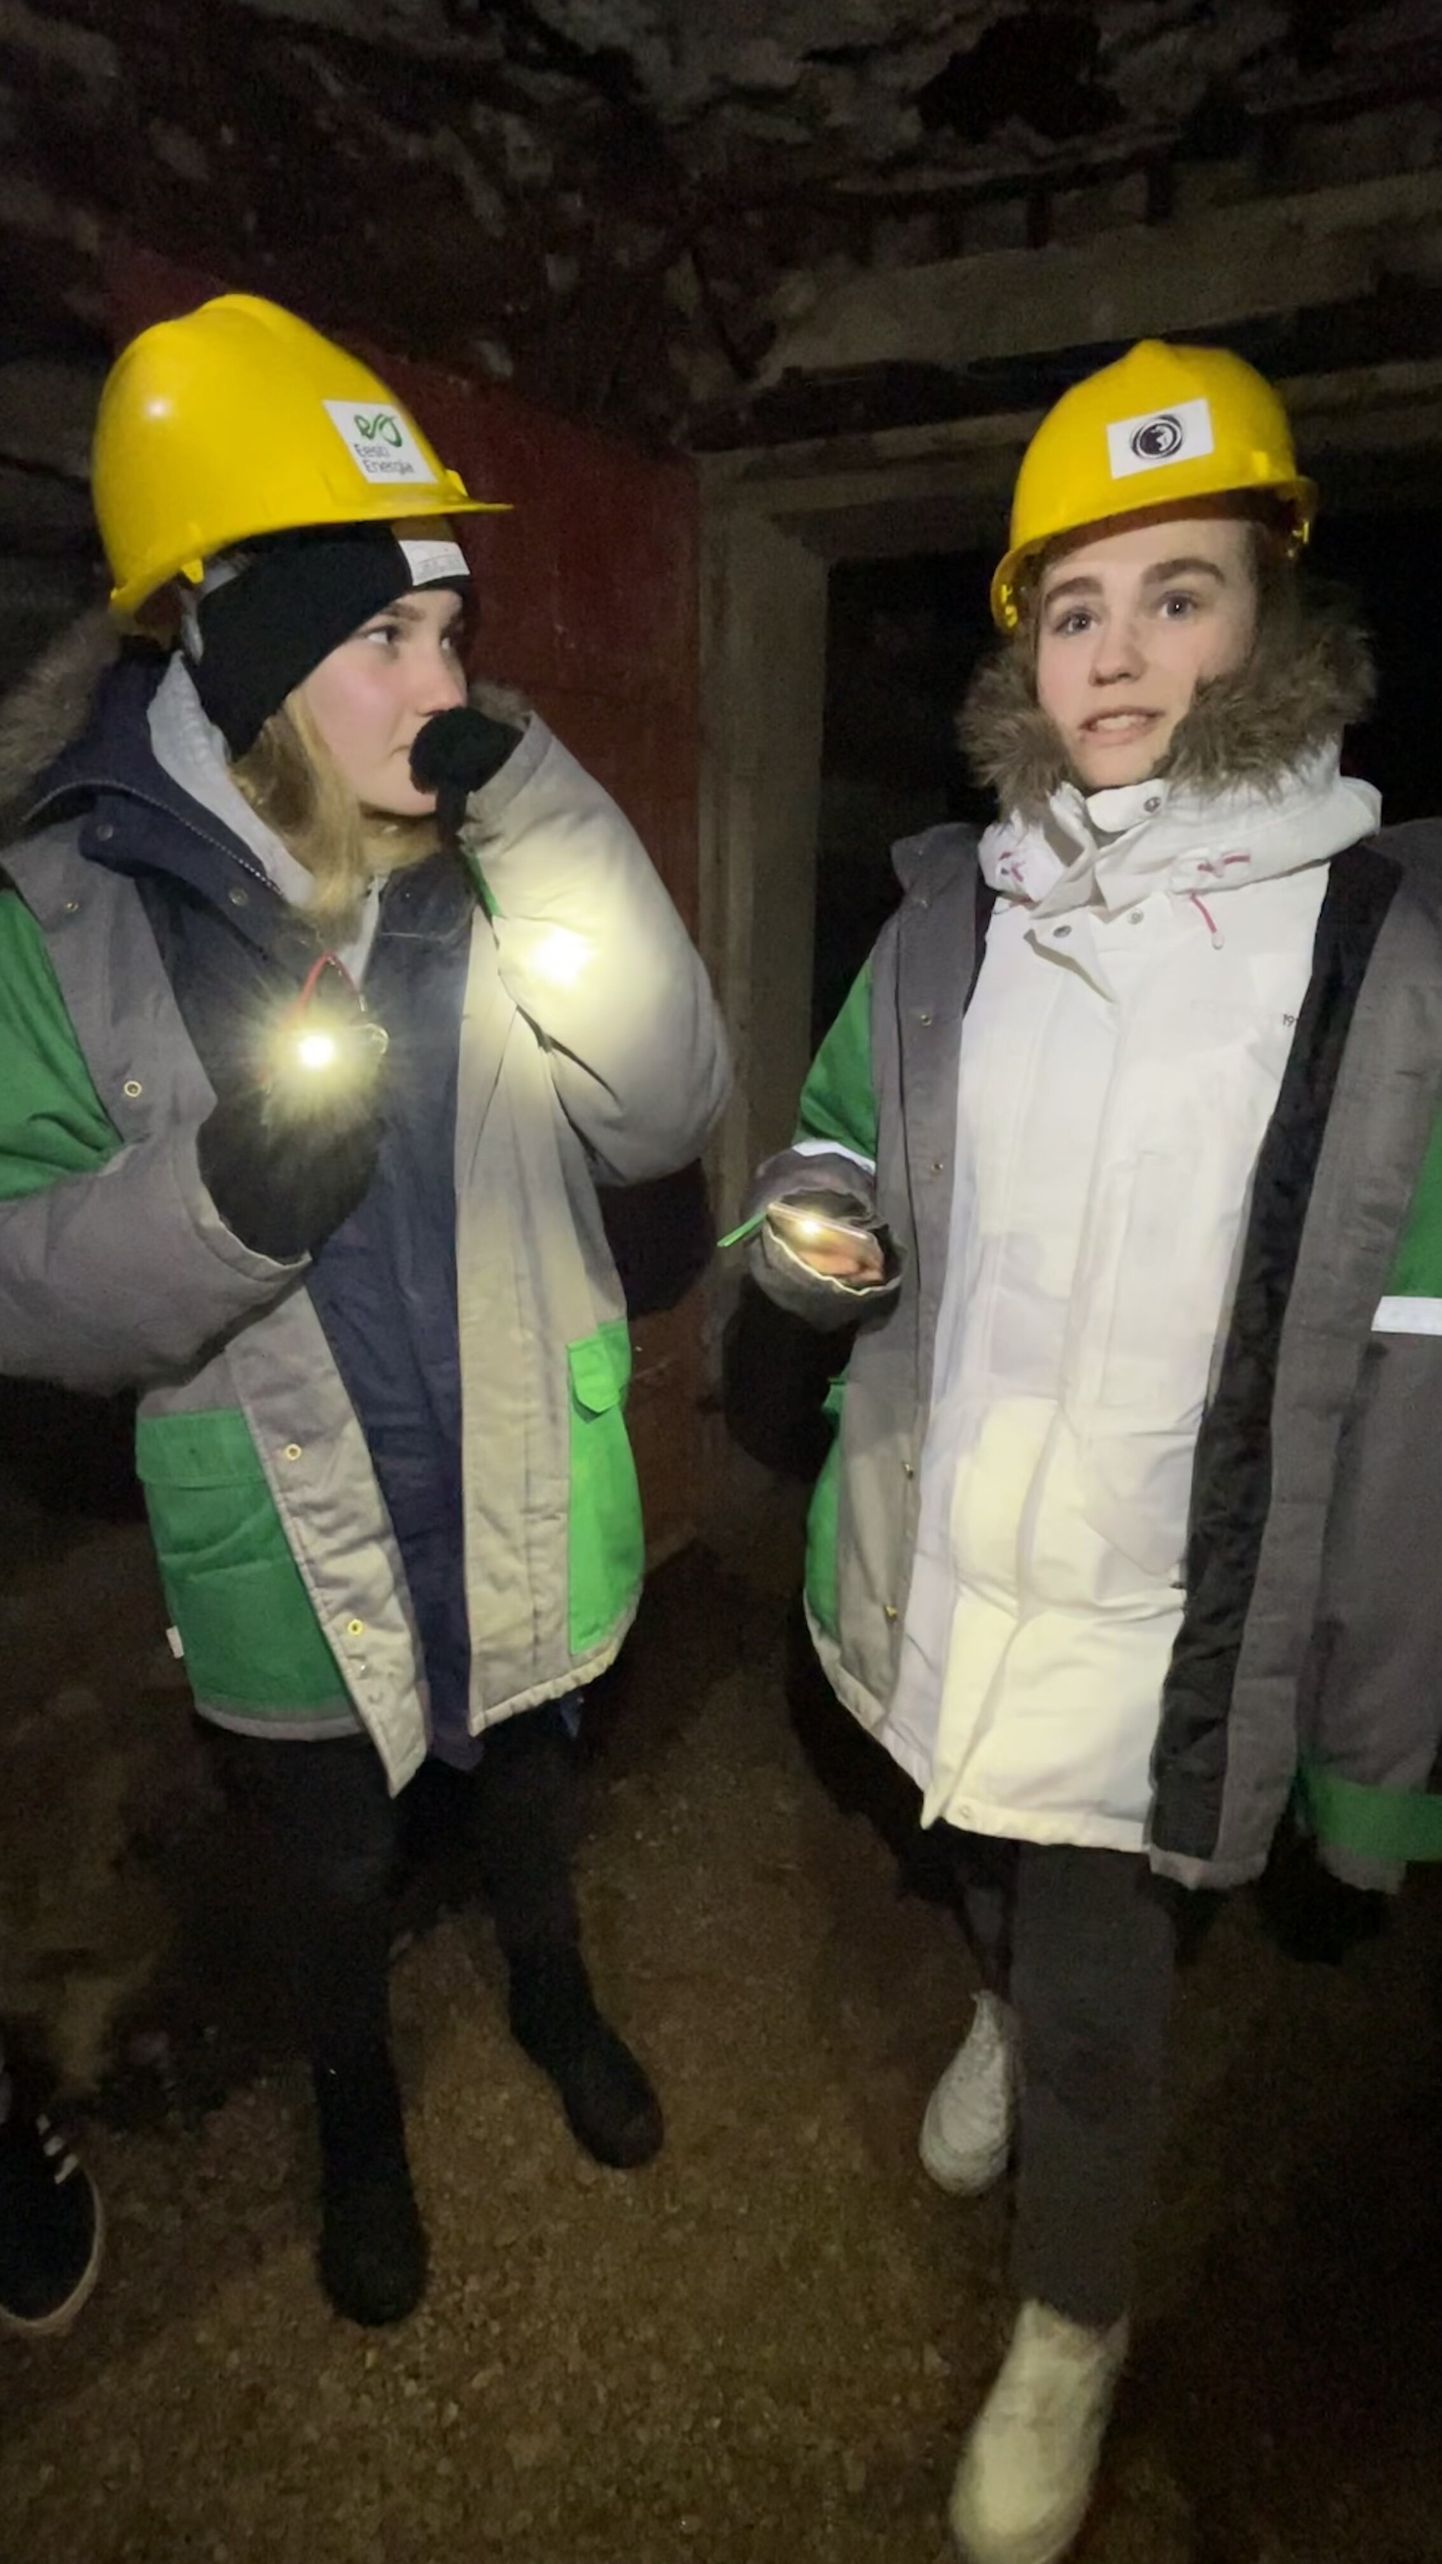 Активная молодежь Вокаского молодежного центра, строящая планы под землей: на снимке - Бритта Элийзе Асток и Анни Трийн Салван.